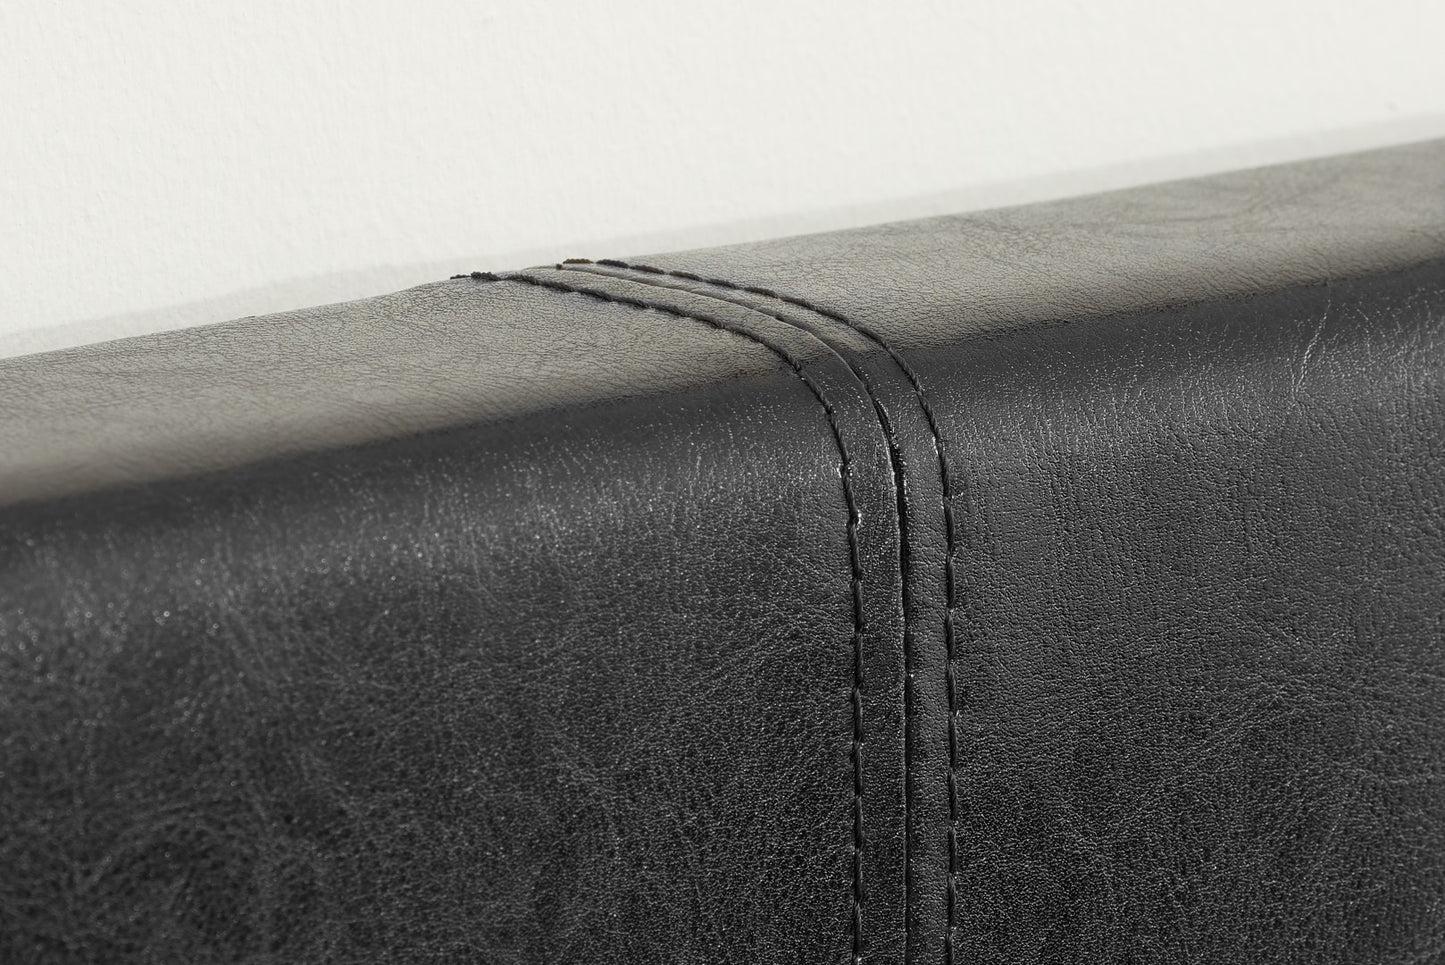 Birlea Berlin 3ft Single Black Faux Leather Ottoman Bed Frame